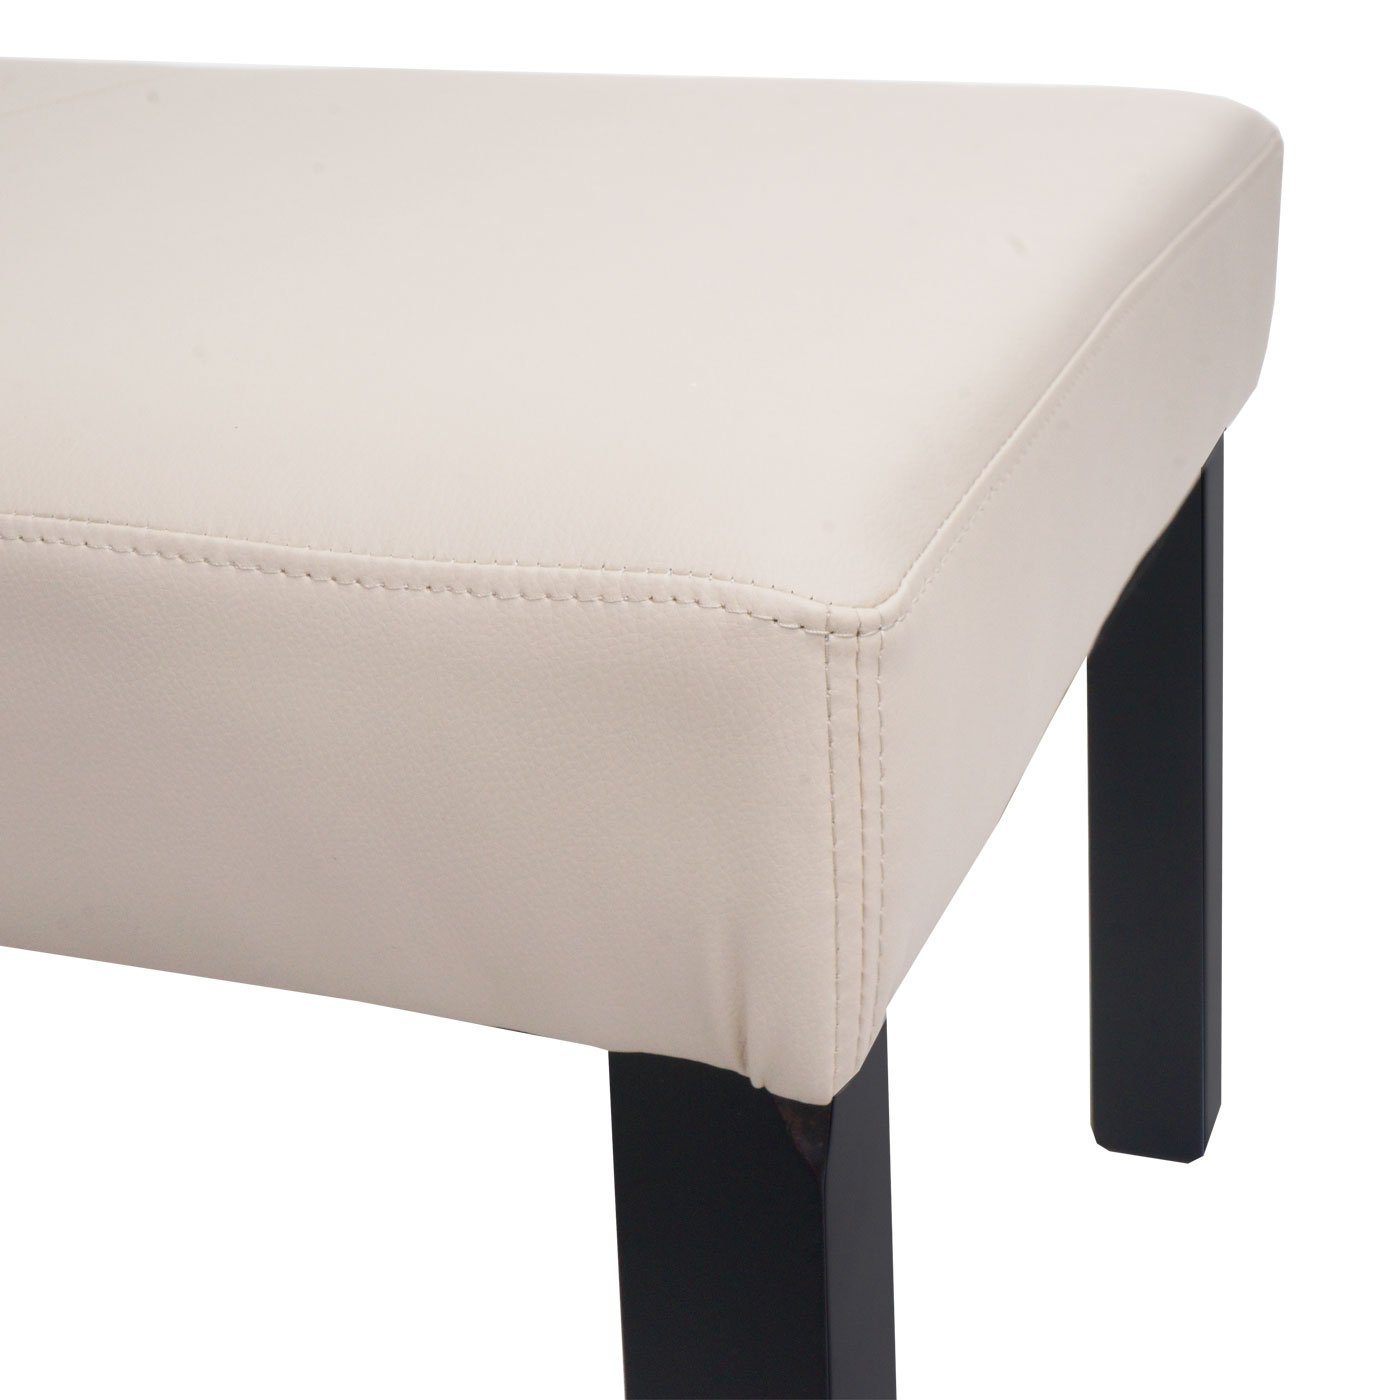 MCW Sitzbank M37S, Gepolsterte Sitzfläche, braun modernes Design, beige | Stabile Füße